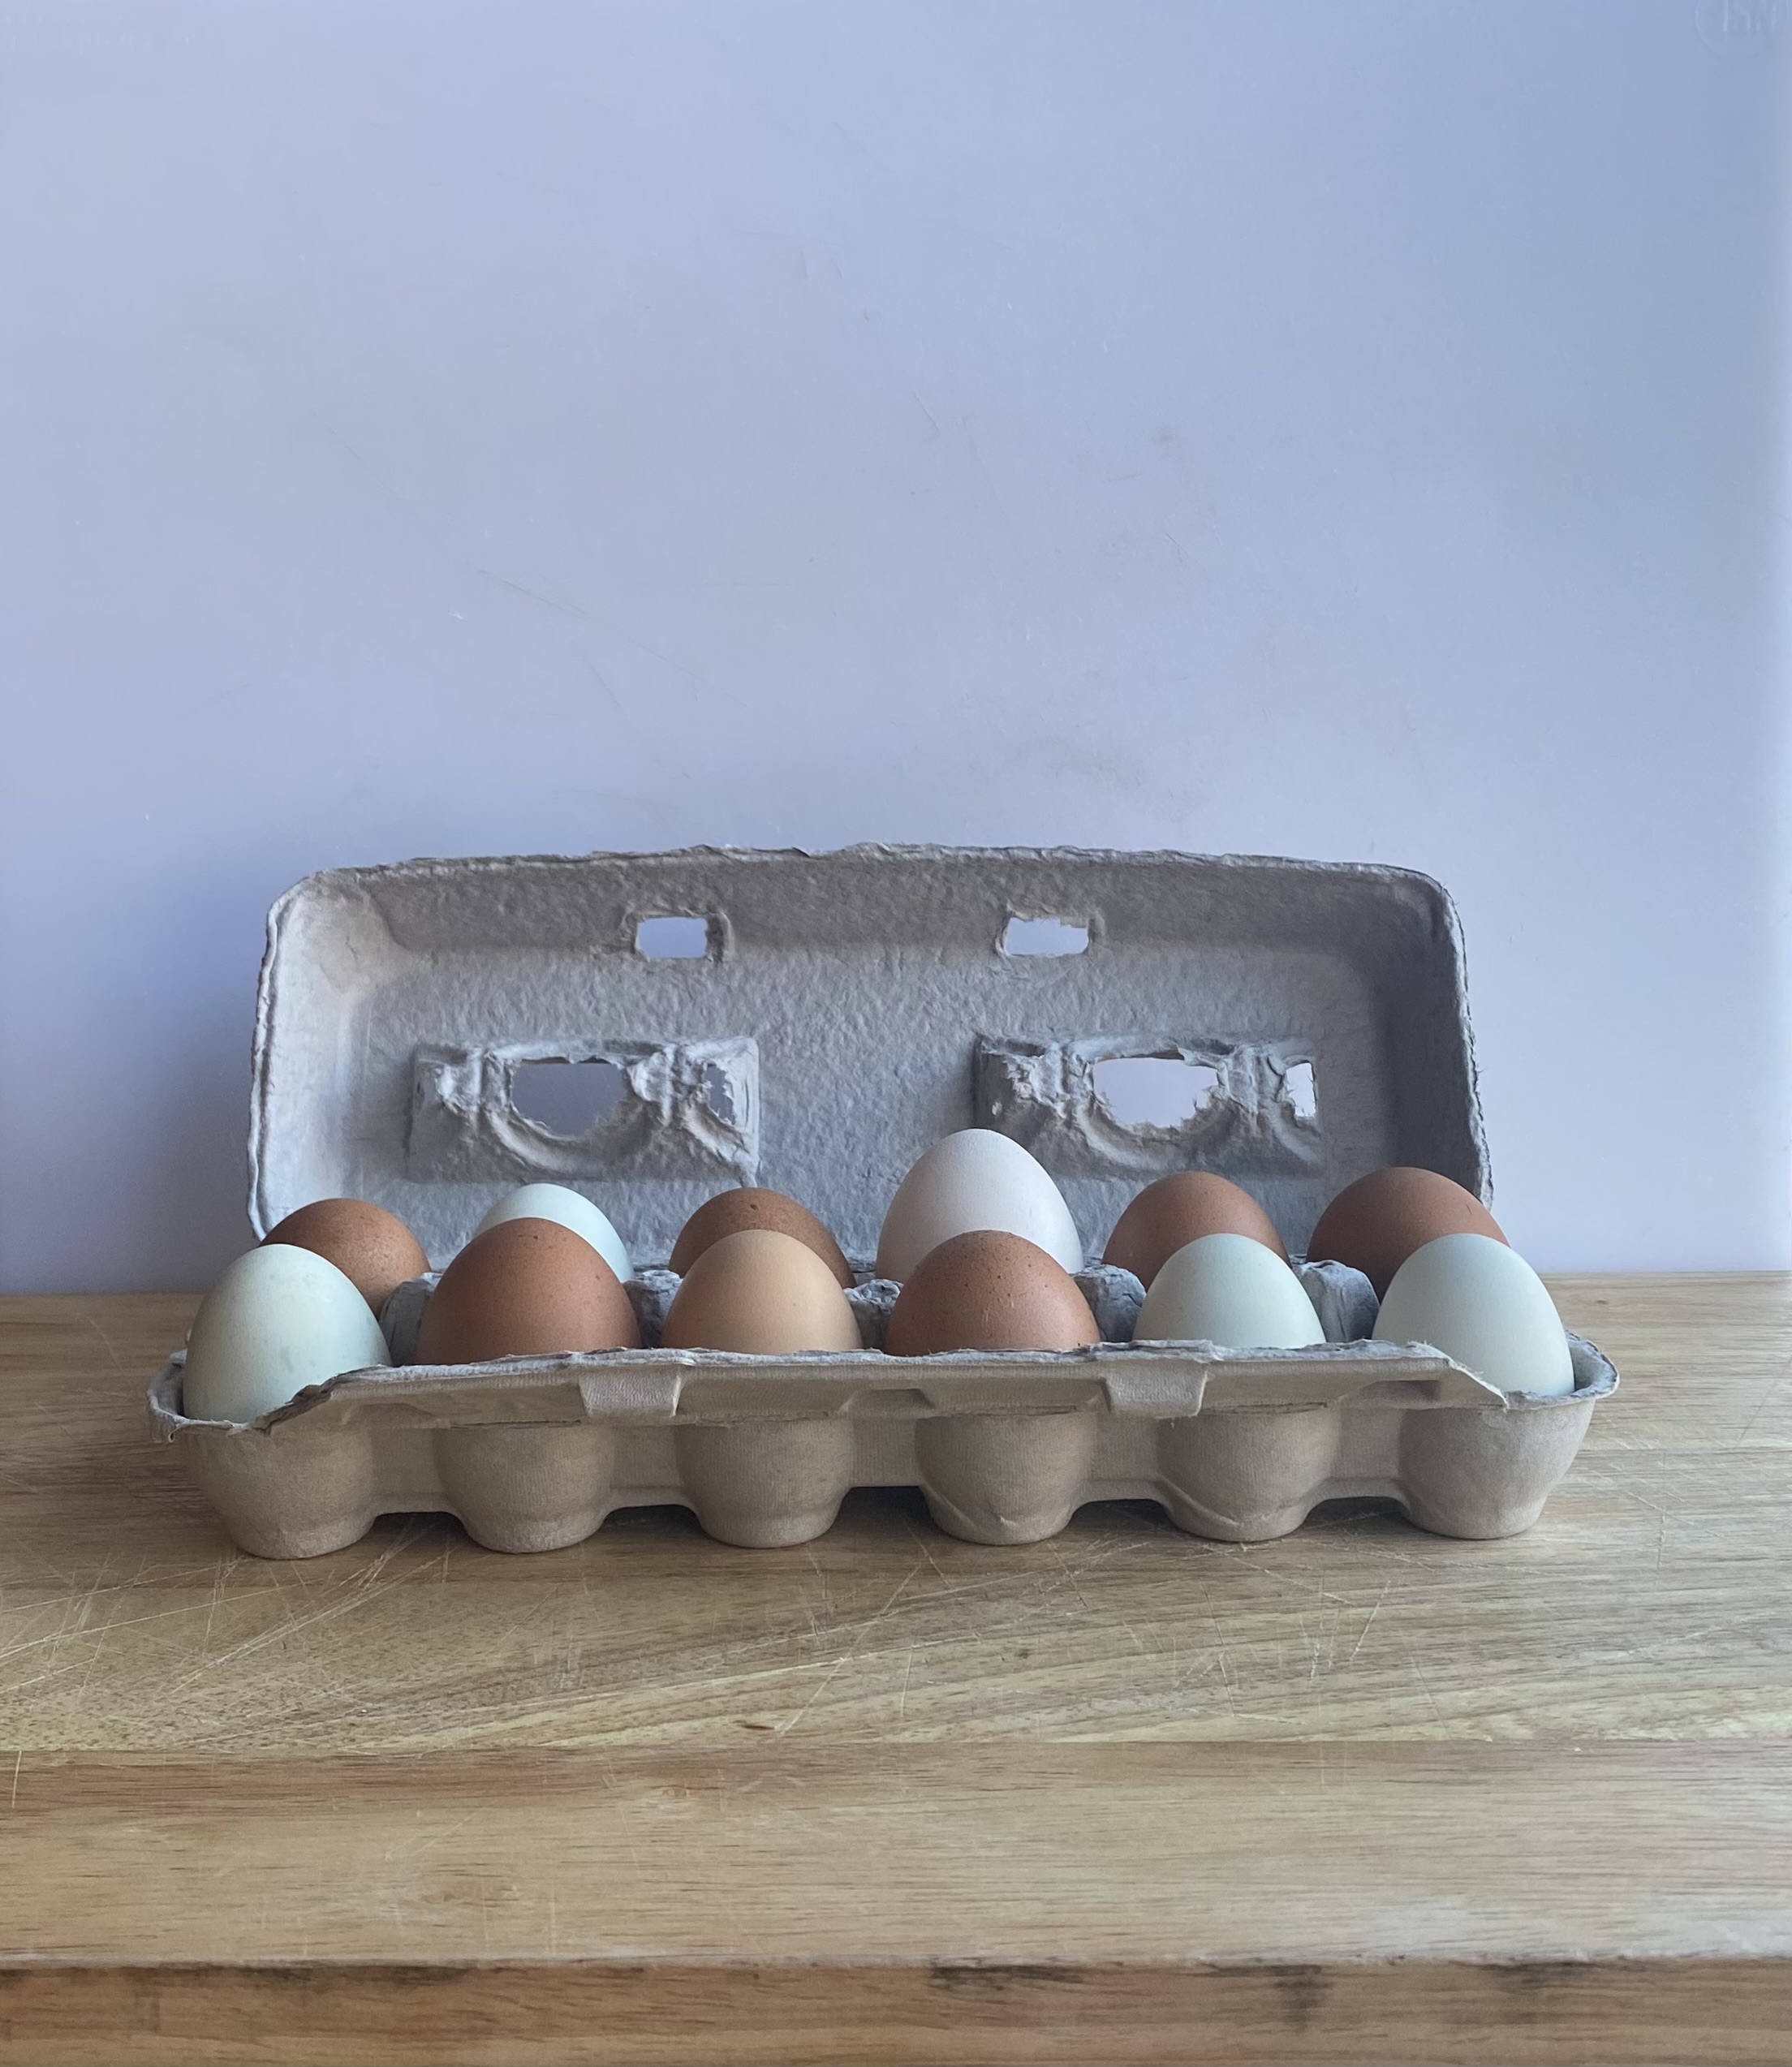 1 Dozen Pasture Raised Chicken Eggs